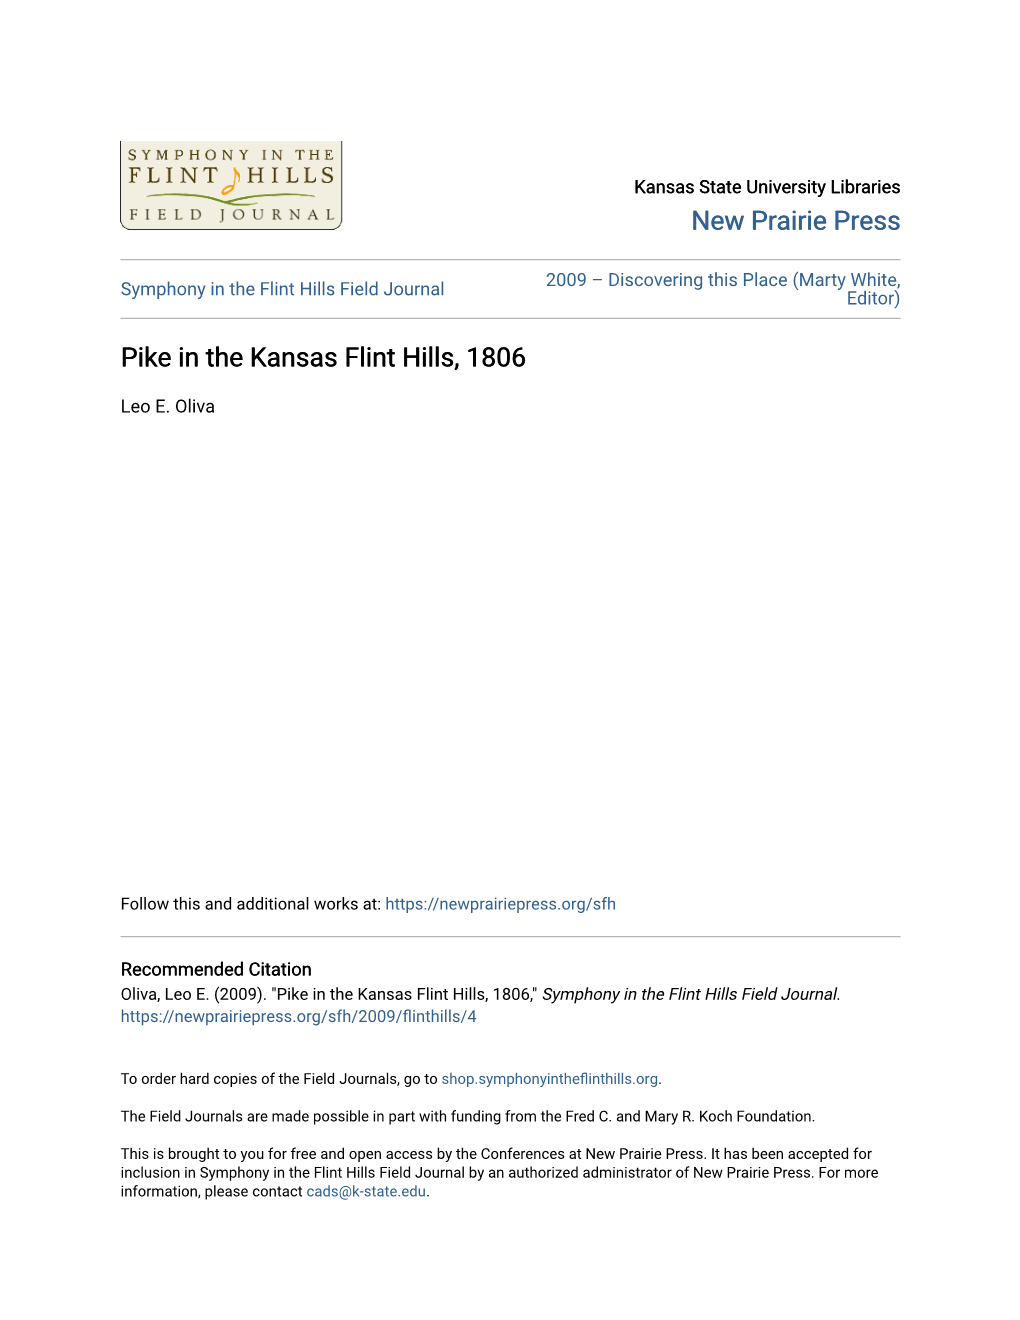 Pike in the Kansas Flint Hills, 1806